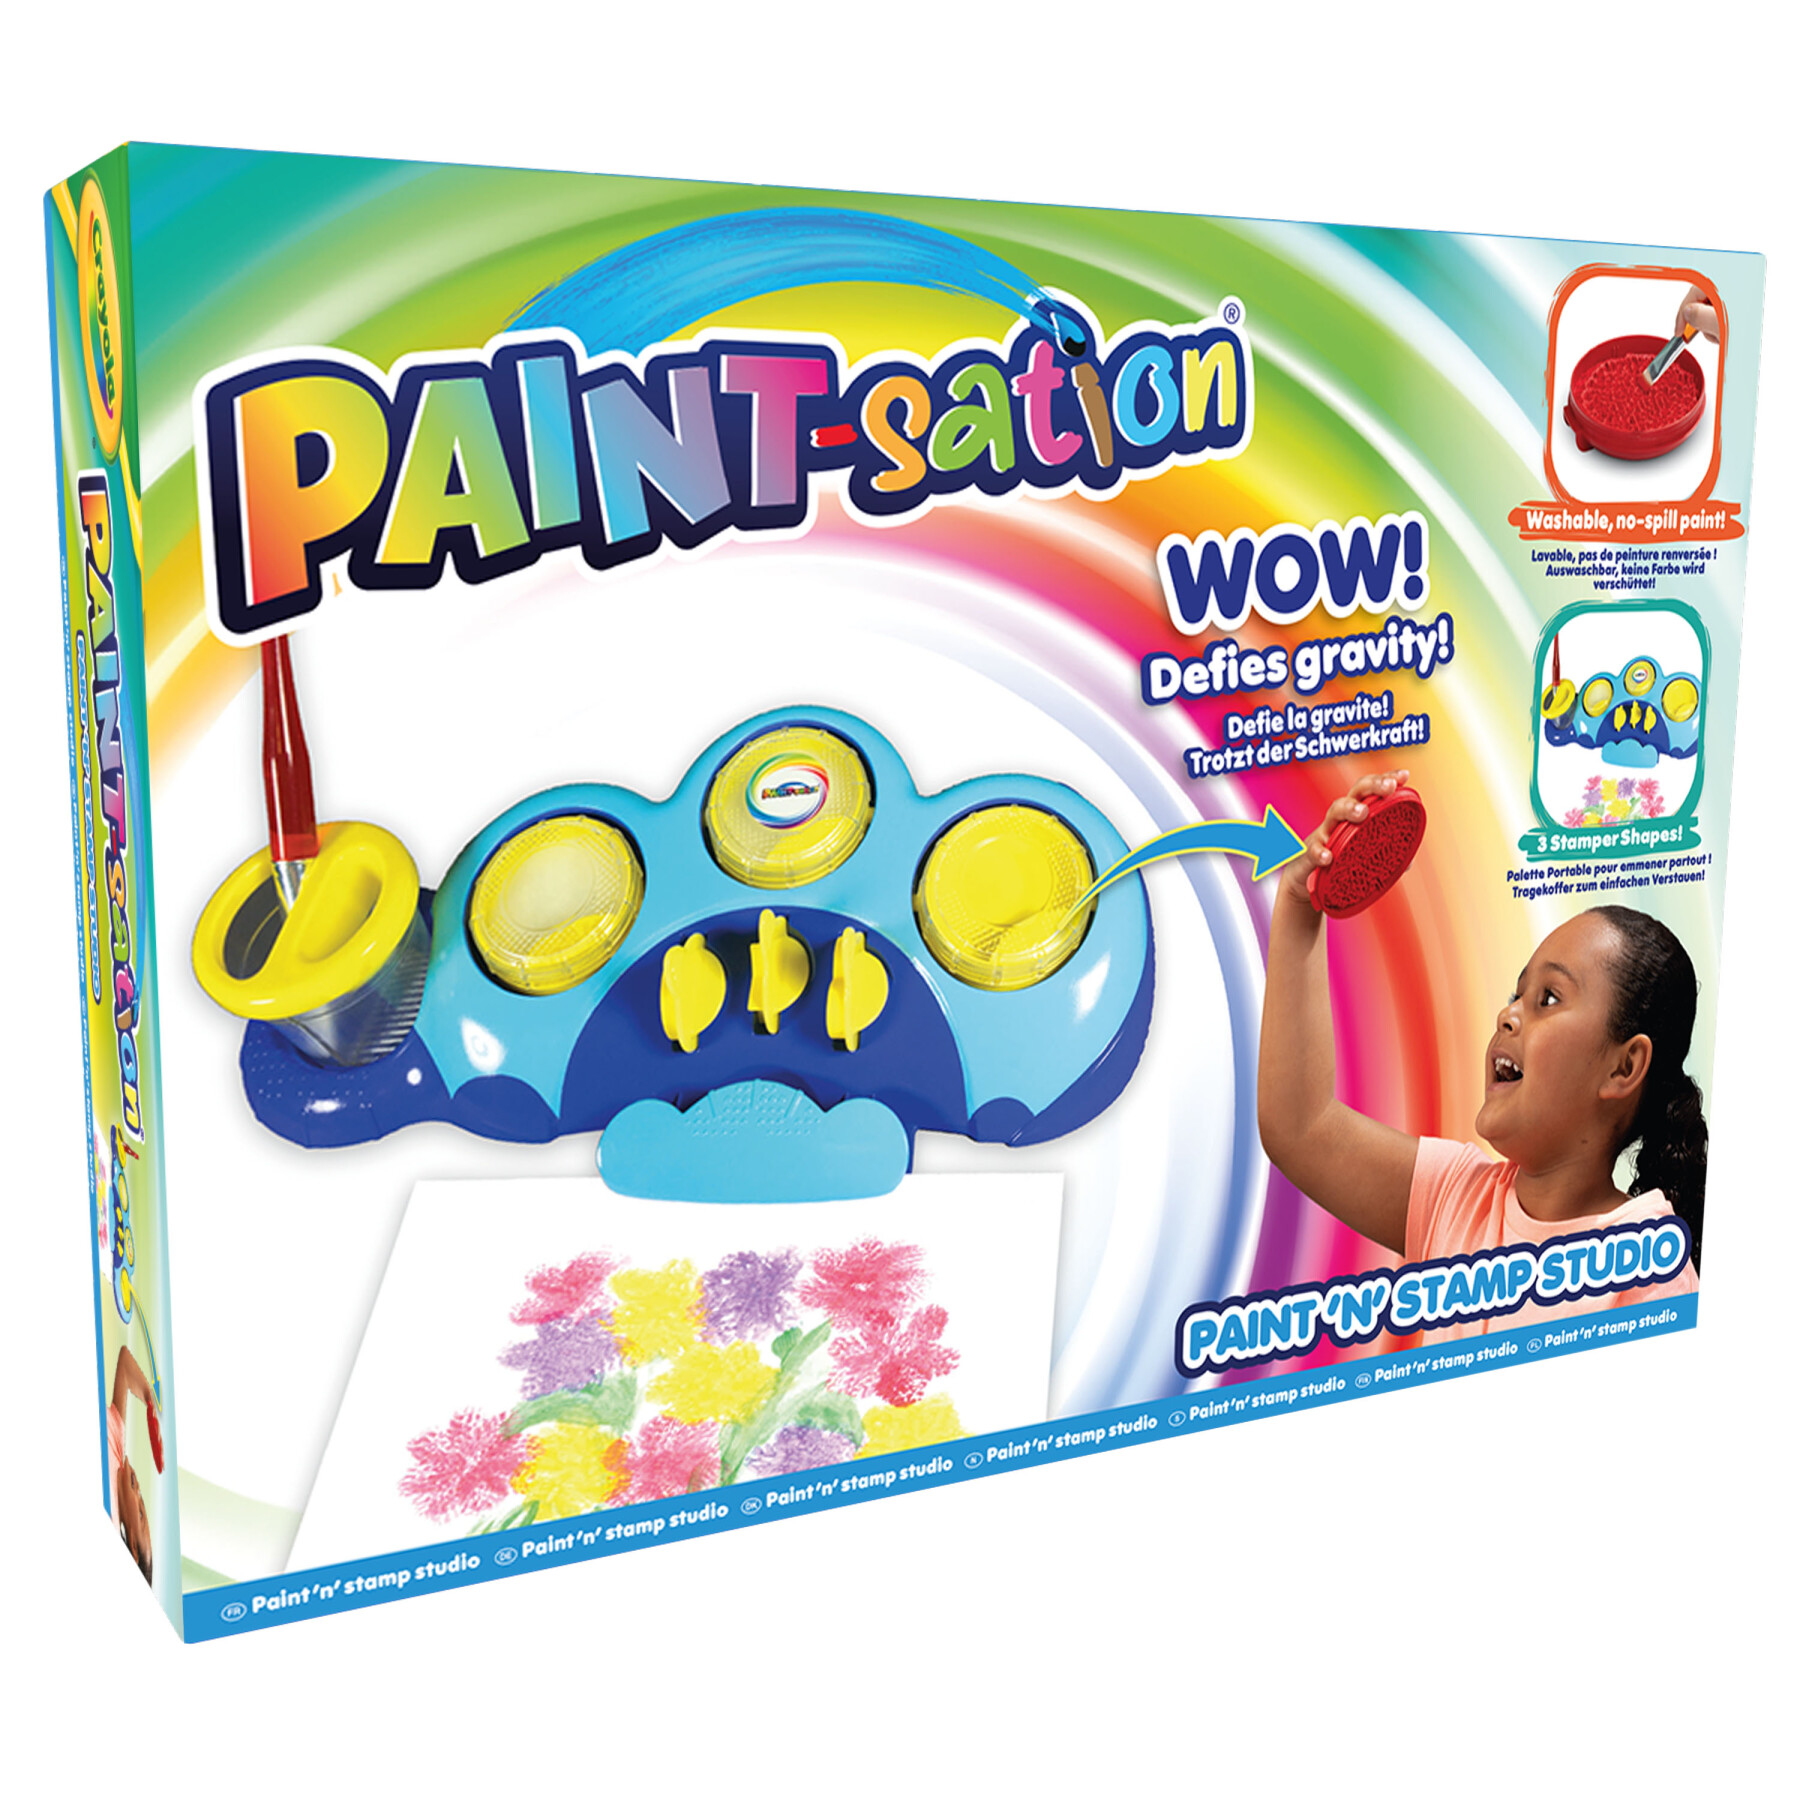 Paint-sation paint 'n' stamp studio - 